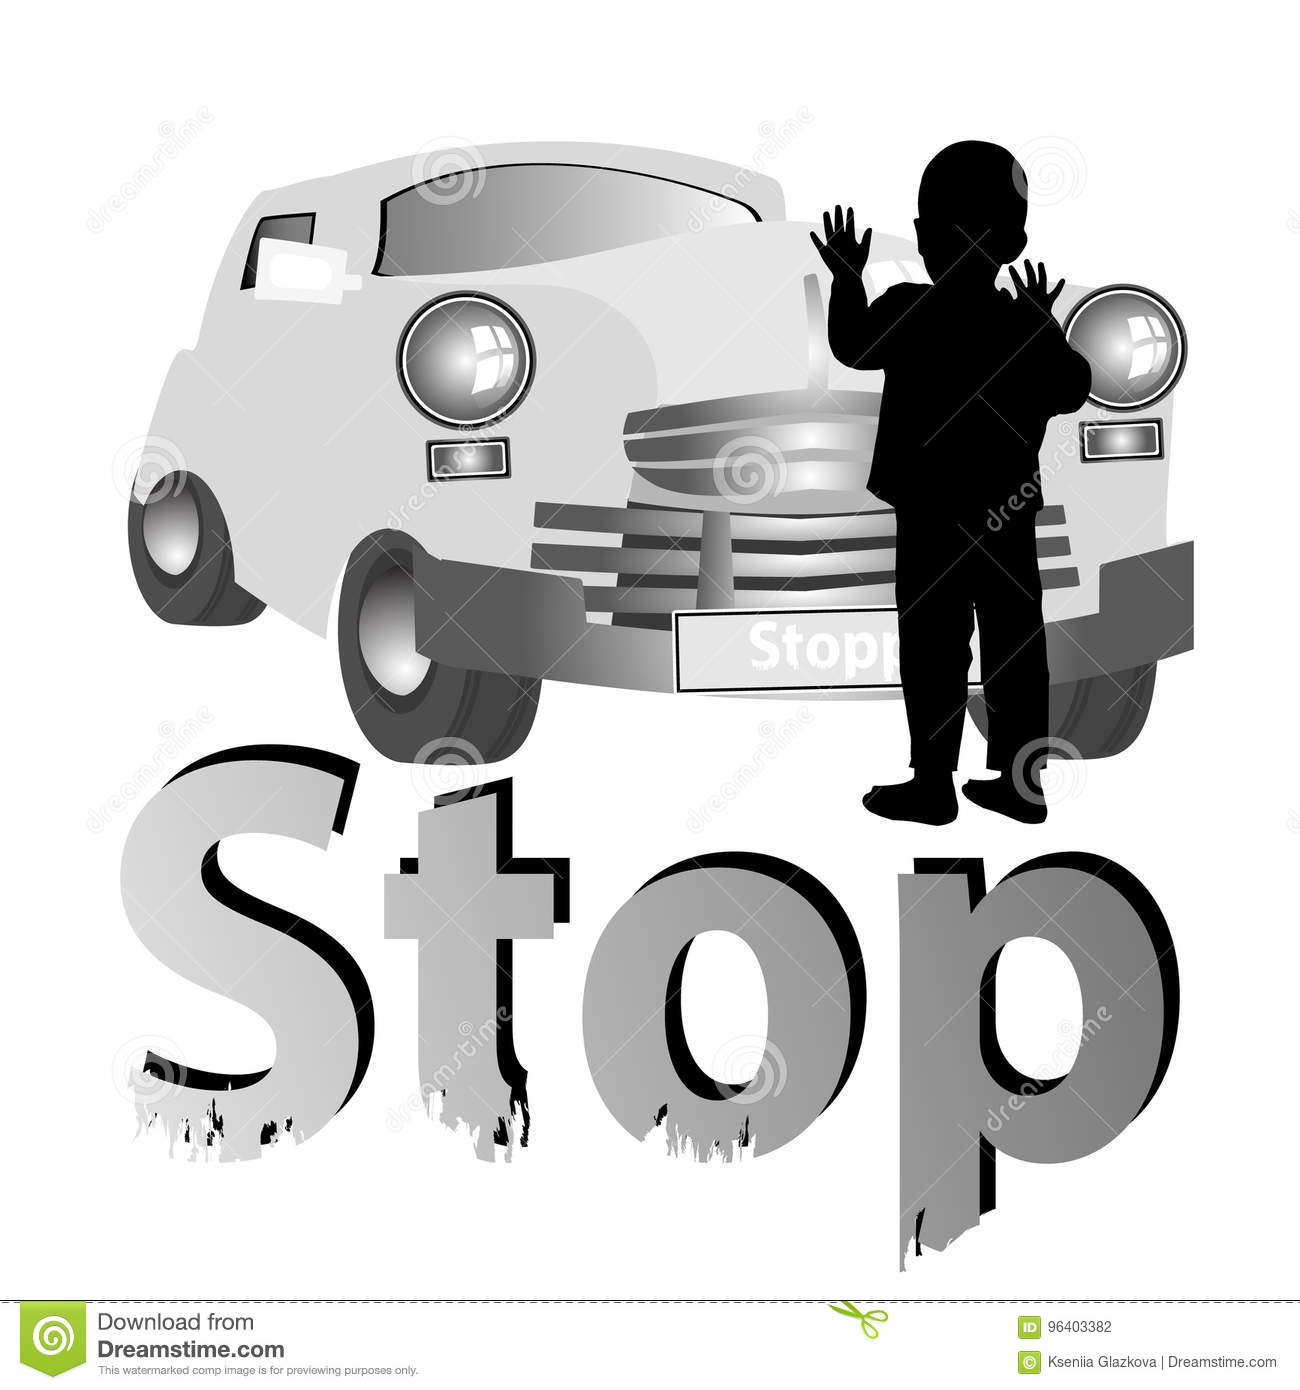 stop-accident-road-children-danger-.jpg